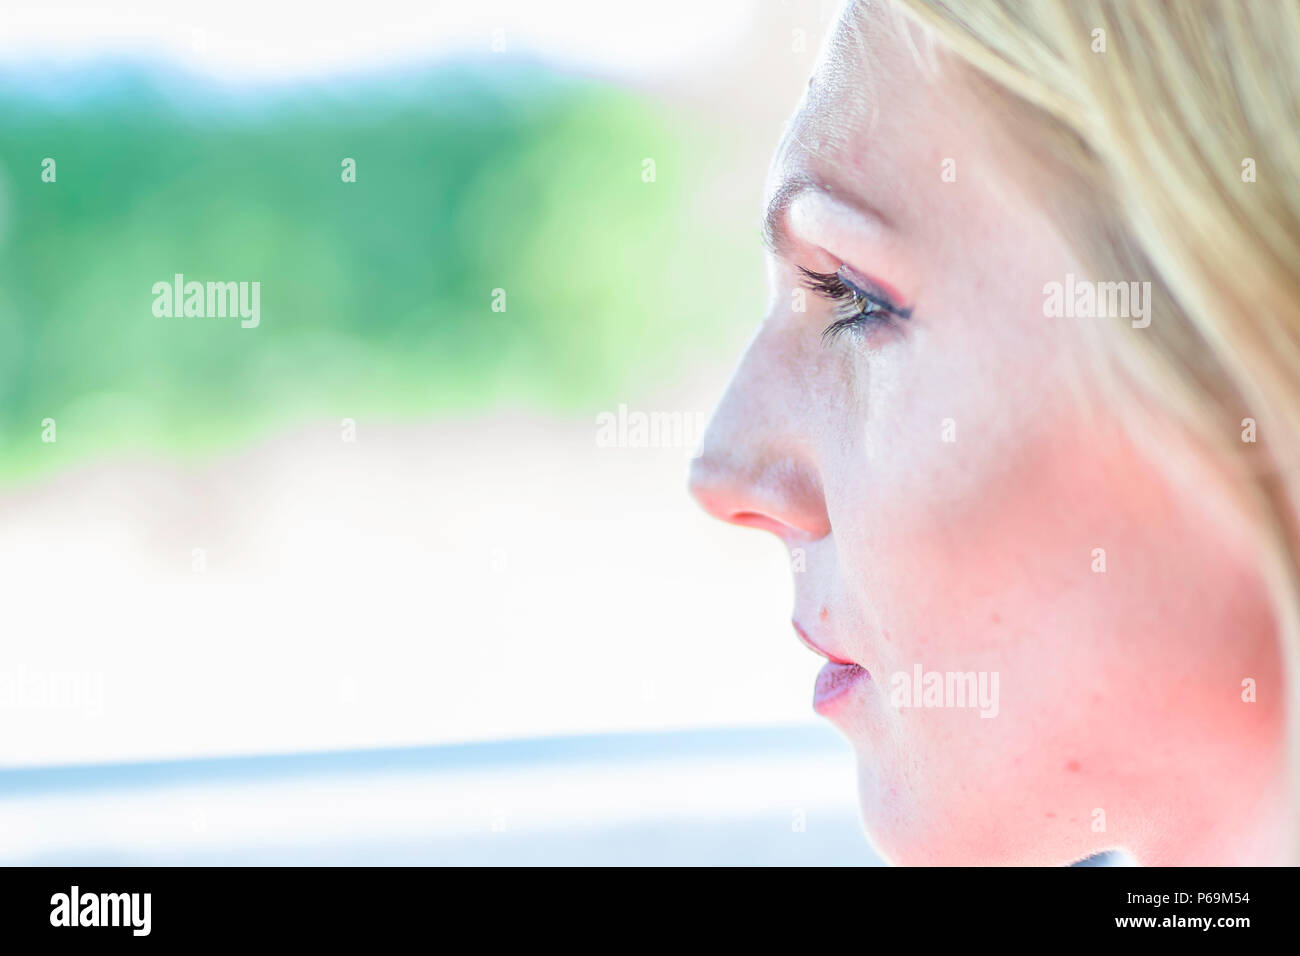 Ritratto di donna alla guida di auto.profilo volto close up.concentrata e focalizzata sulla strada driver femminile.Spazio per modificare.sfondo sfocato. Foto Stock